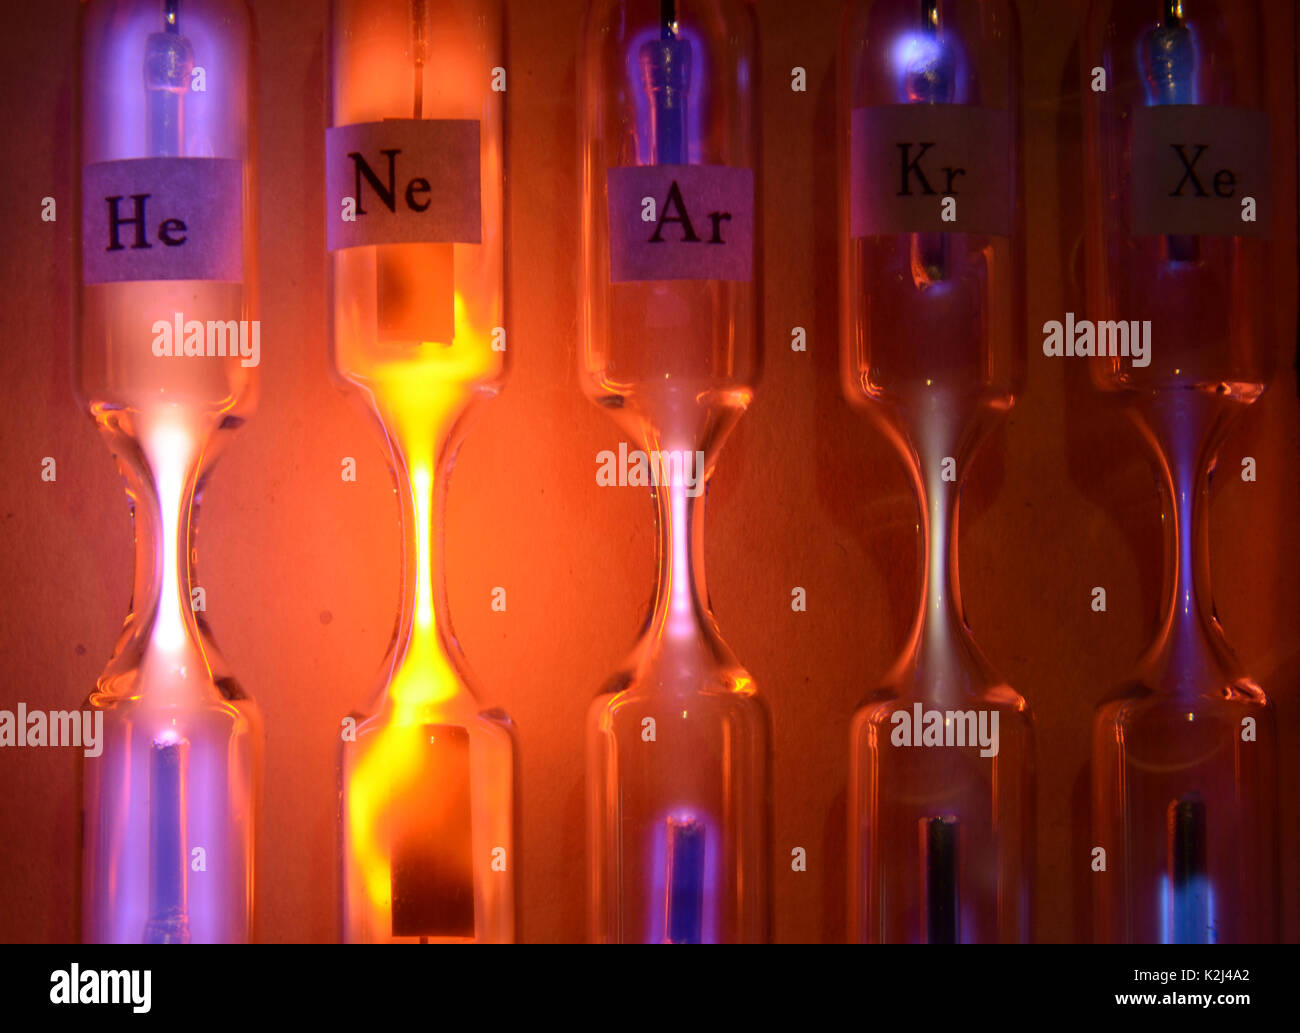 Rohre mit inerten Gasen mit hoher Spannung begeistert. Von links nach rechts: Helium, Neon, Argon, Krypton und Xenon. Jedes Rohr emittiert eine andere Farbe und in Stockfoto